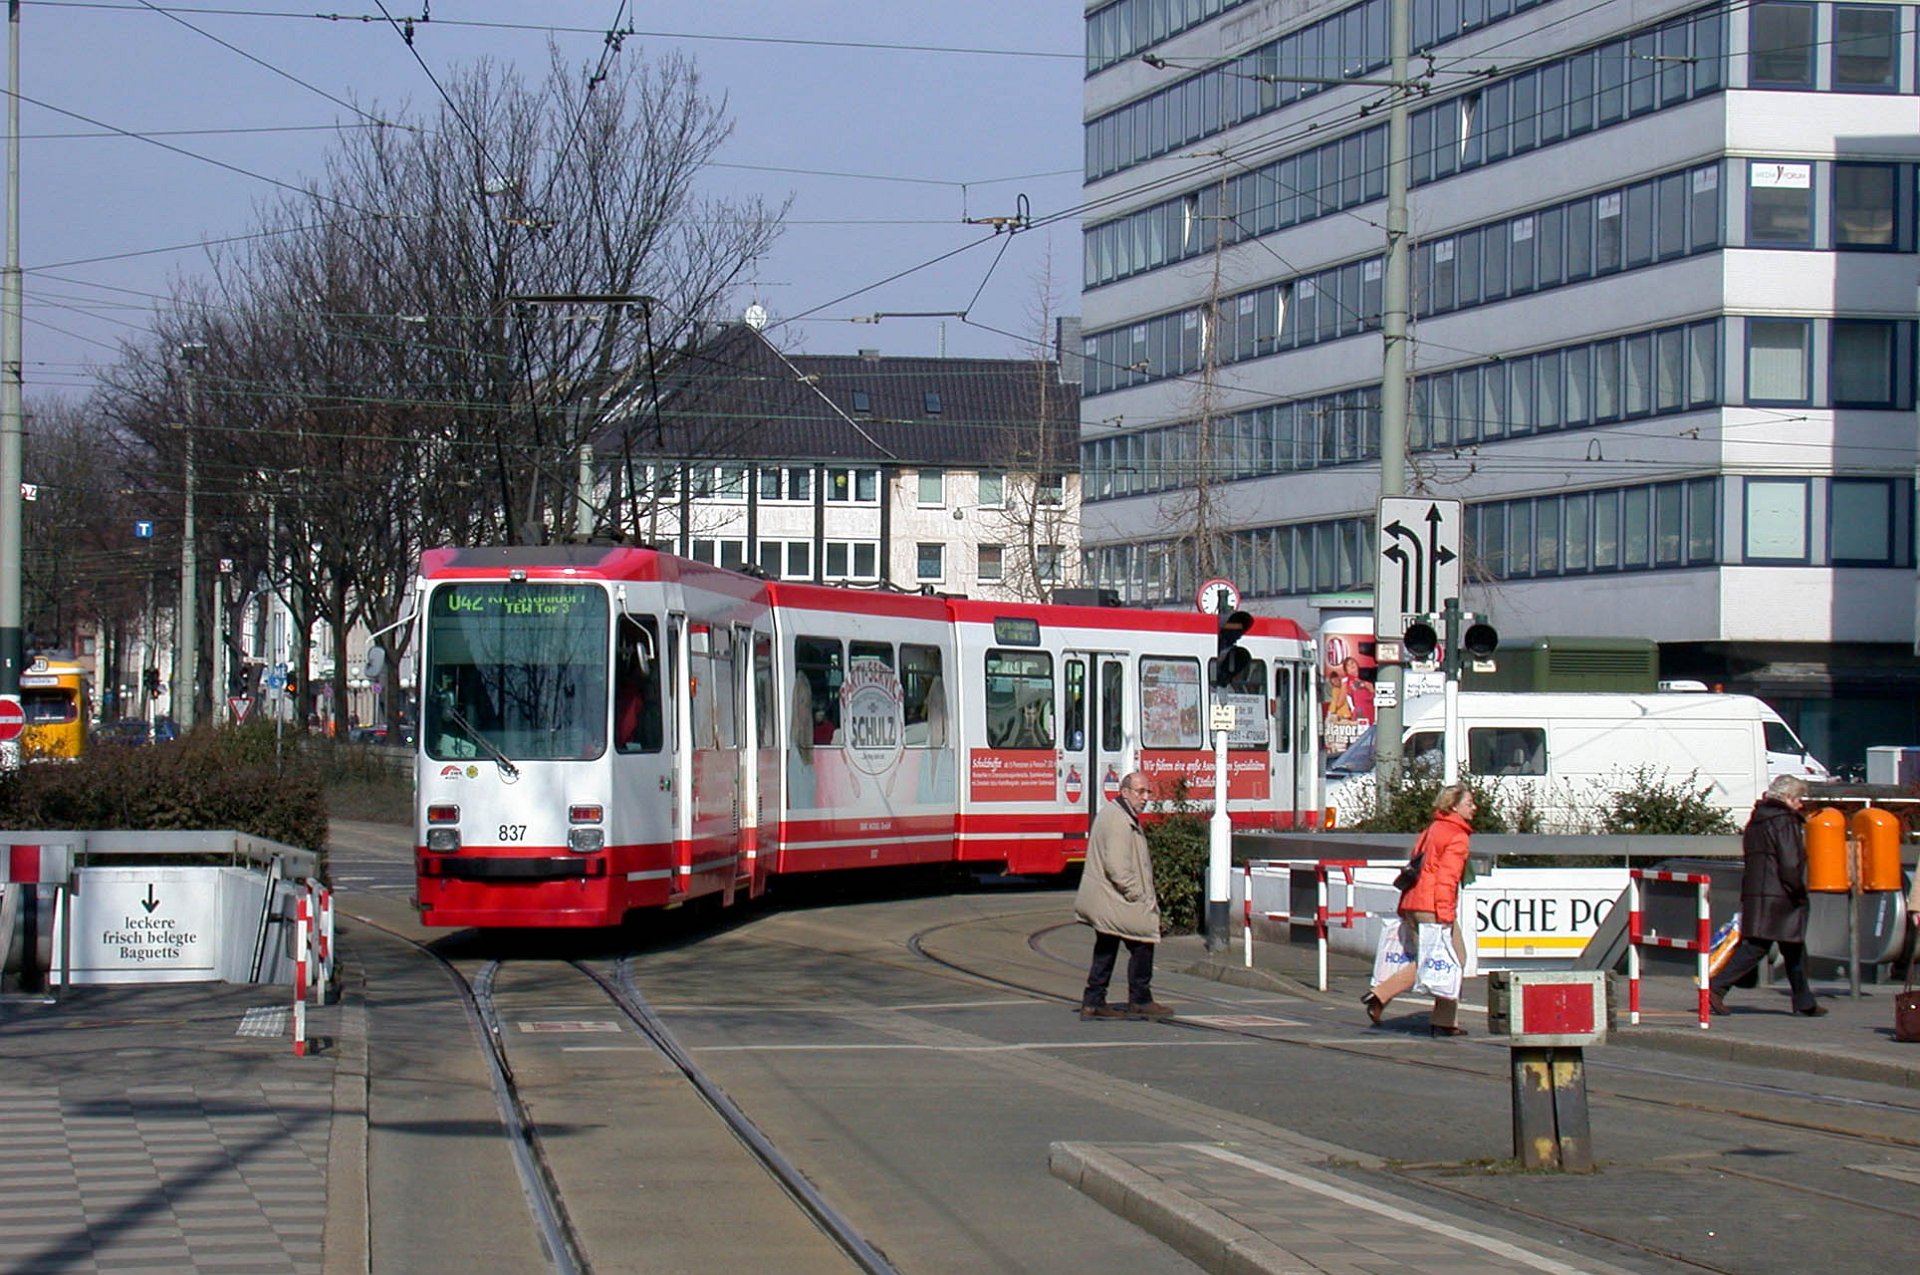 M8C 837 Straßenbahn 837 beim Einbiegen zur Haltestelle Rheinstraße. Tram 837 shortly before arriving at stop Rheinstraße.